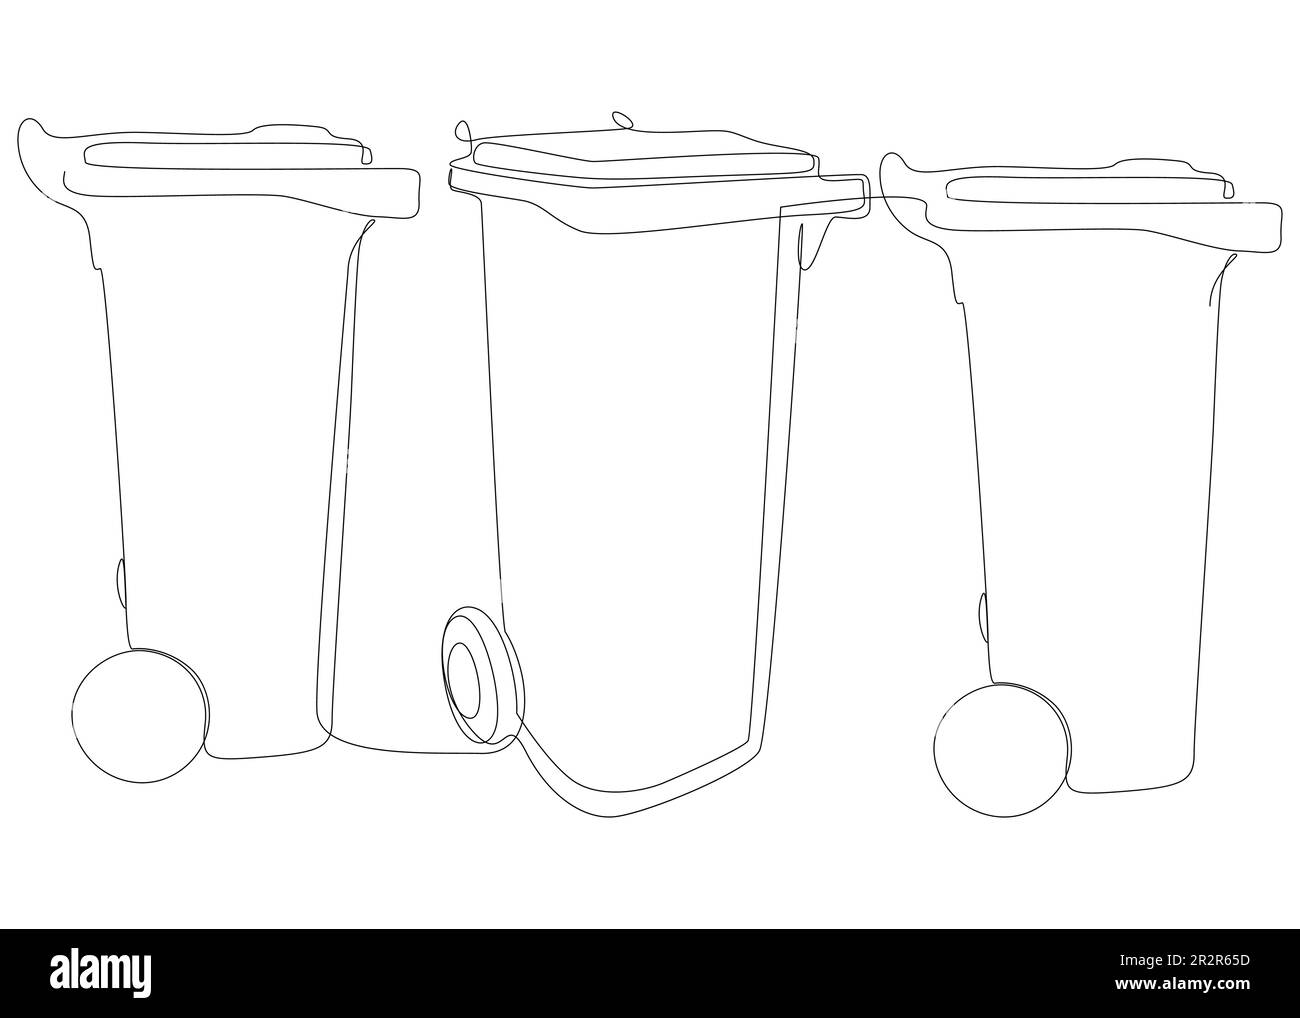 Eine durchgehende Reihe Mülltonnen. Vektorkonzept zur Darstellung dünner Linien. Kontur Zeichnen kreativer Ideen. Stock Vektor